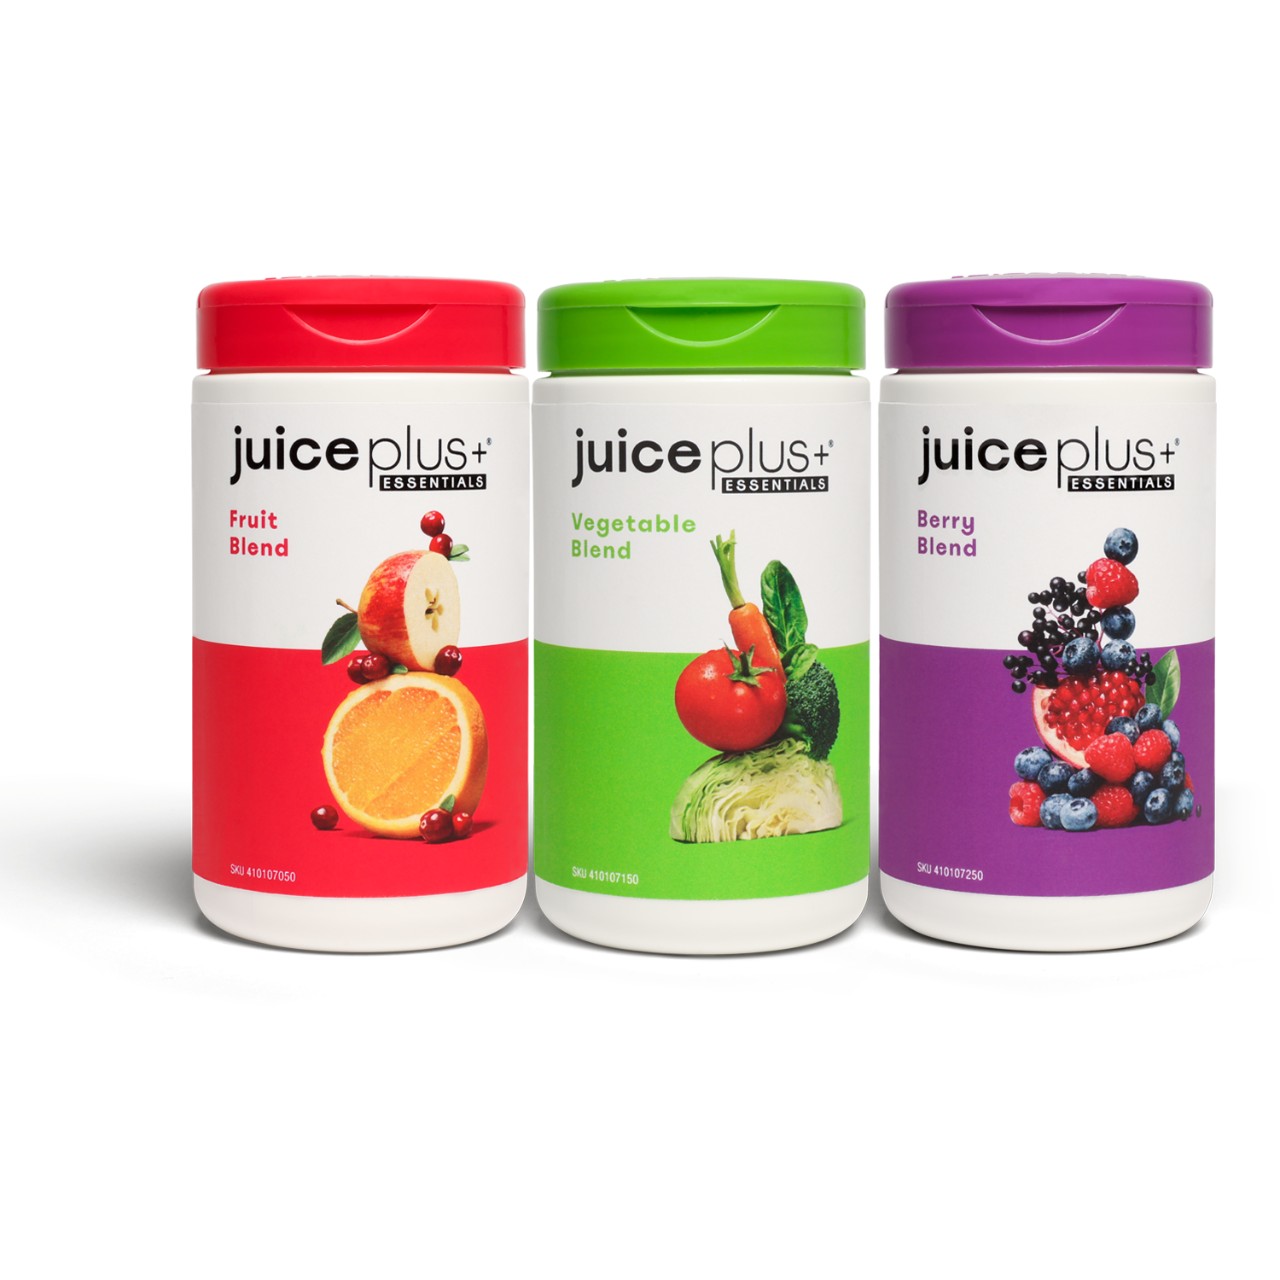 bala Continental éxtasis Juice Plus+ Essentials Cápsulas Selección Frutas, Verduras y Bayas | 3x2  Botes | Juice Plus+